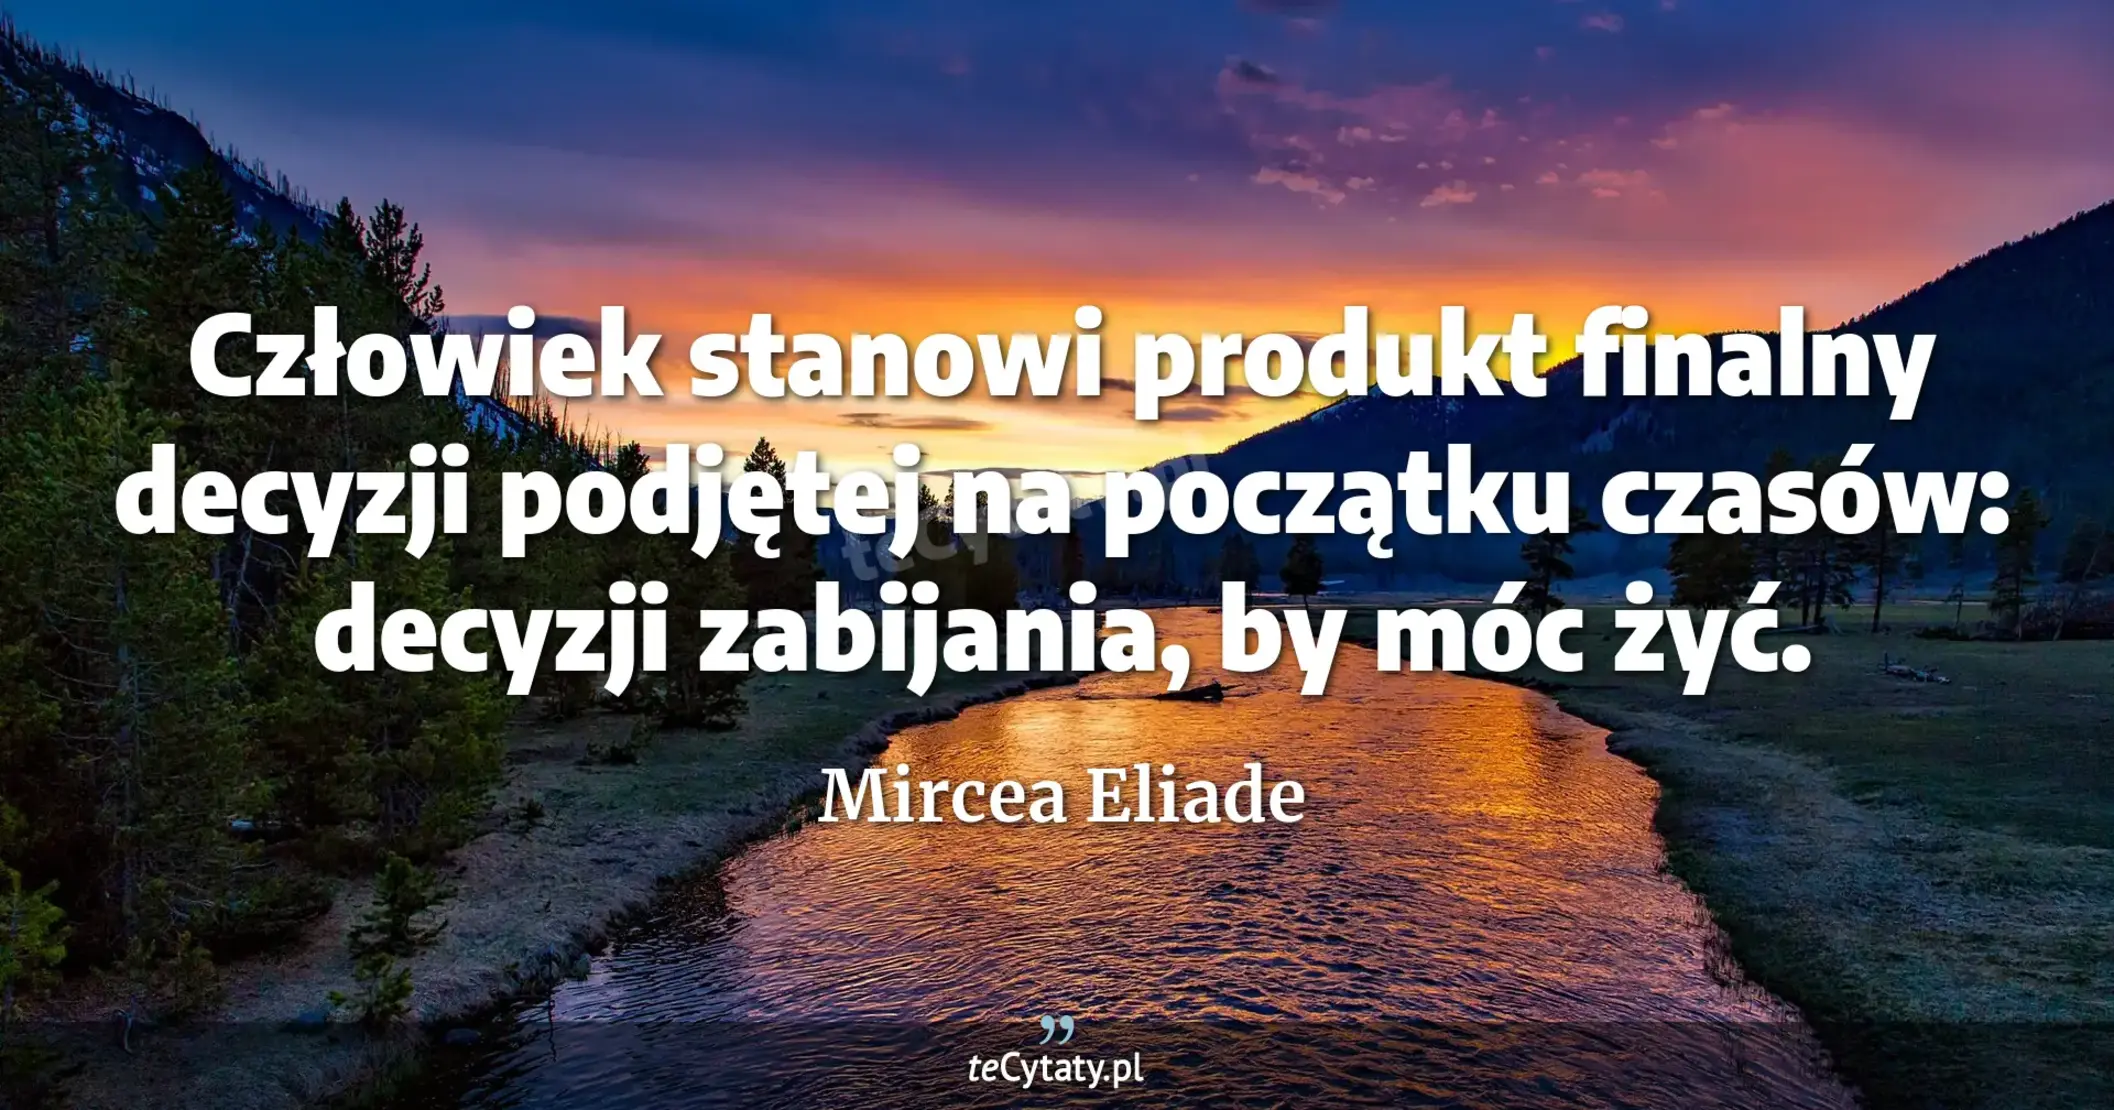 Człowiek stanowi produkt finalny decyzji podjętej na początku czasów: decyzji zabijania, by móc żyć. - Mircea Eliade